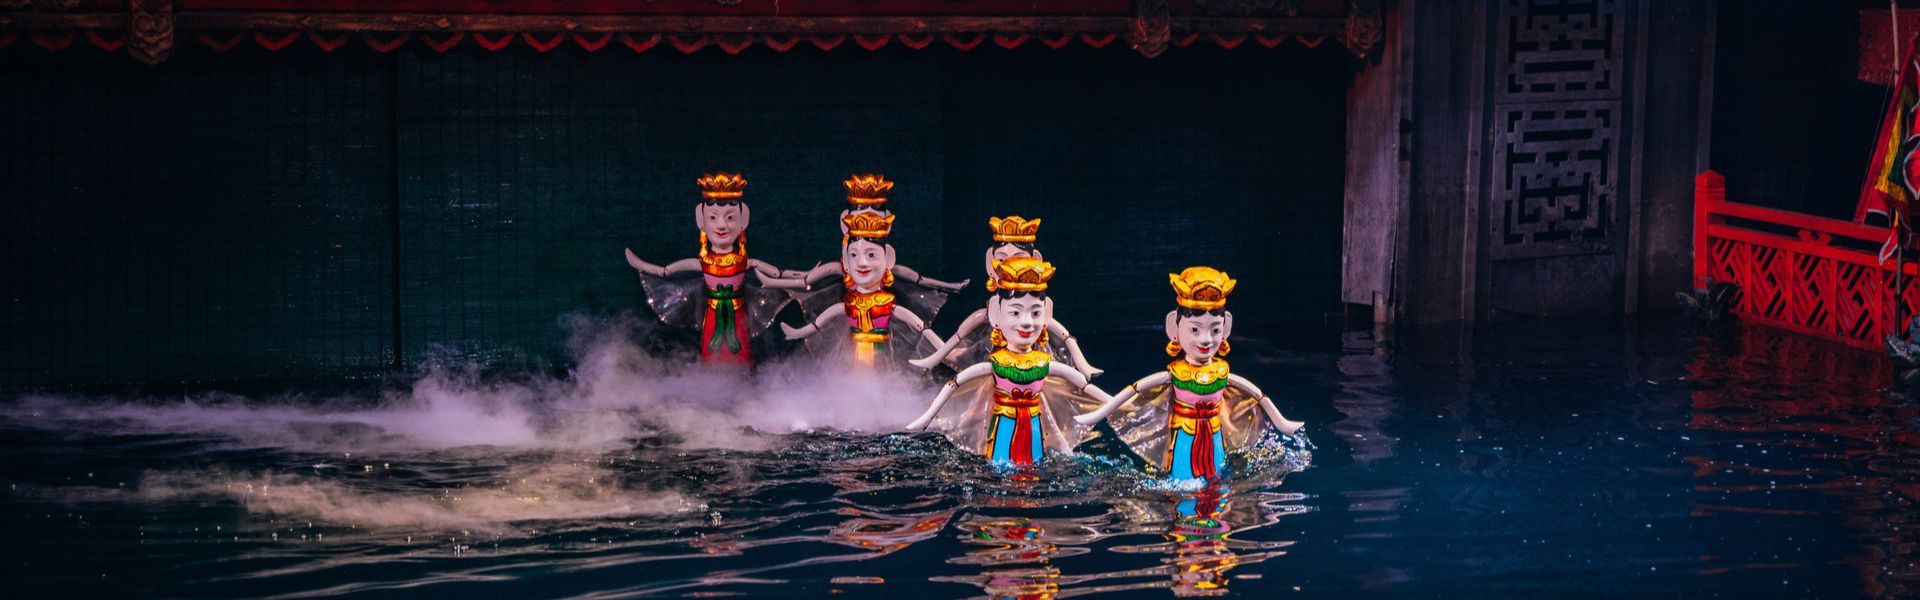 Marionette sull'acqua in Vietnam